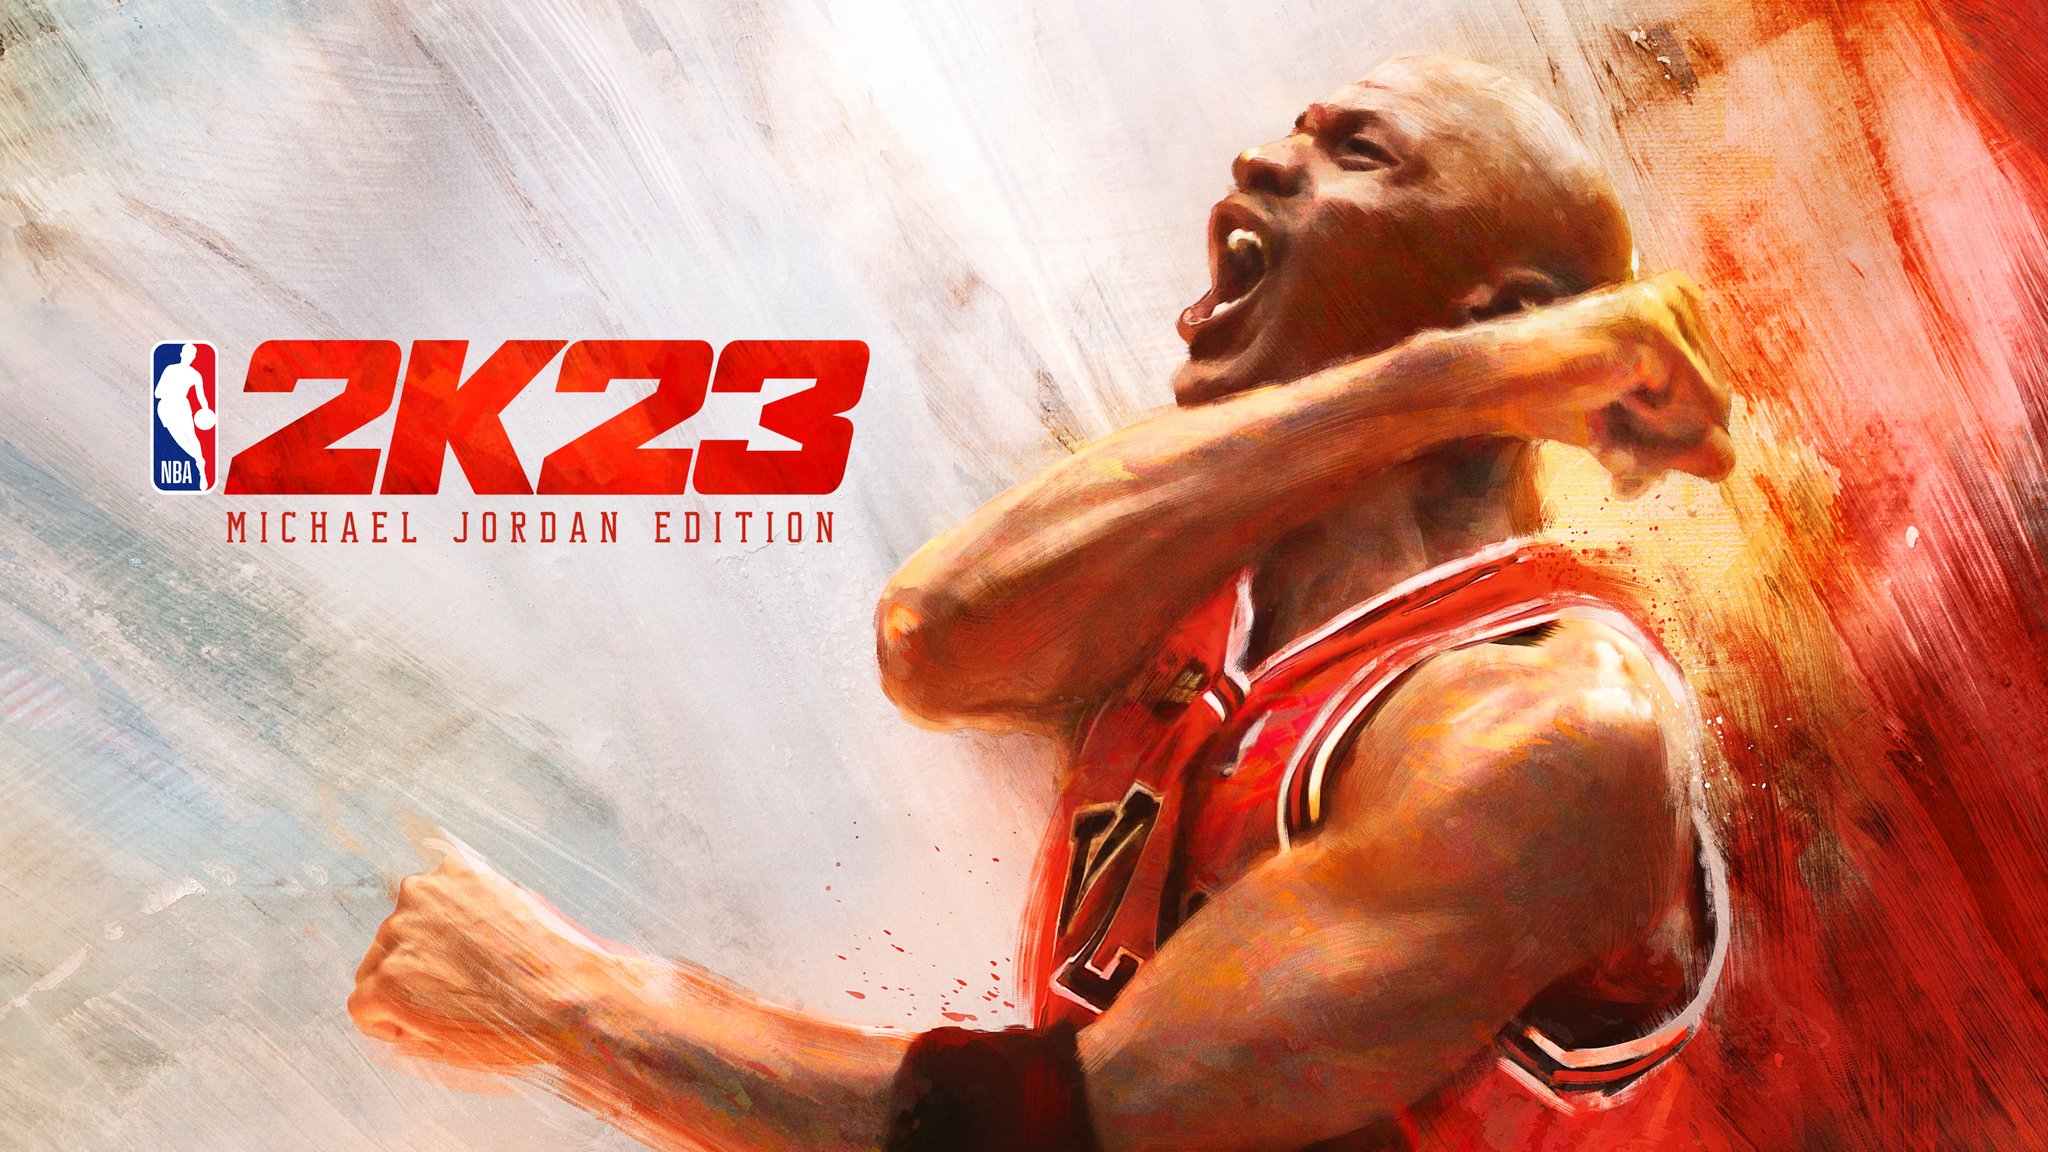 NBA 2K23 Review: Trước khi tải về và chơi NBA 2K23, hãy đọc những bài đánh giá đầy đủ và chi tiết về trò chơi này. Bạn sẽ tìm thấy những thông tin hữu ích, đánh giá chân thực và kinh nghiệm trải nghiệm từ những người đã chơi trò chơi này.